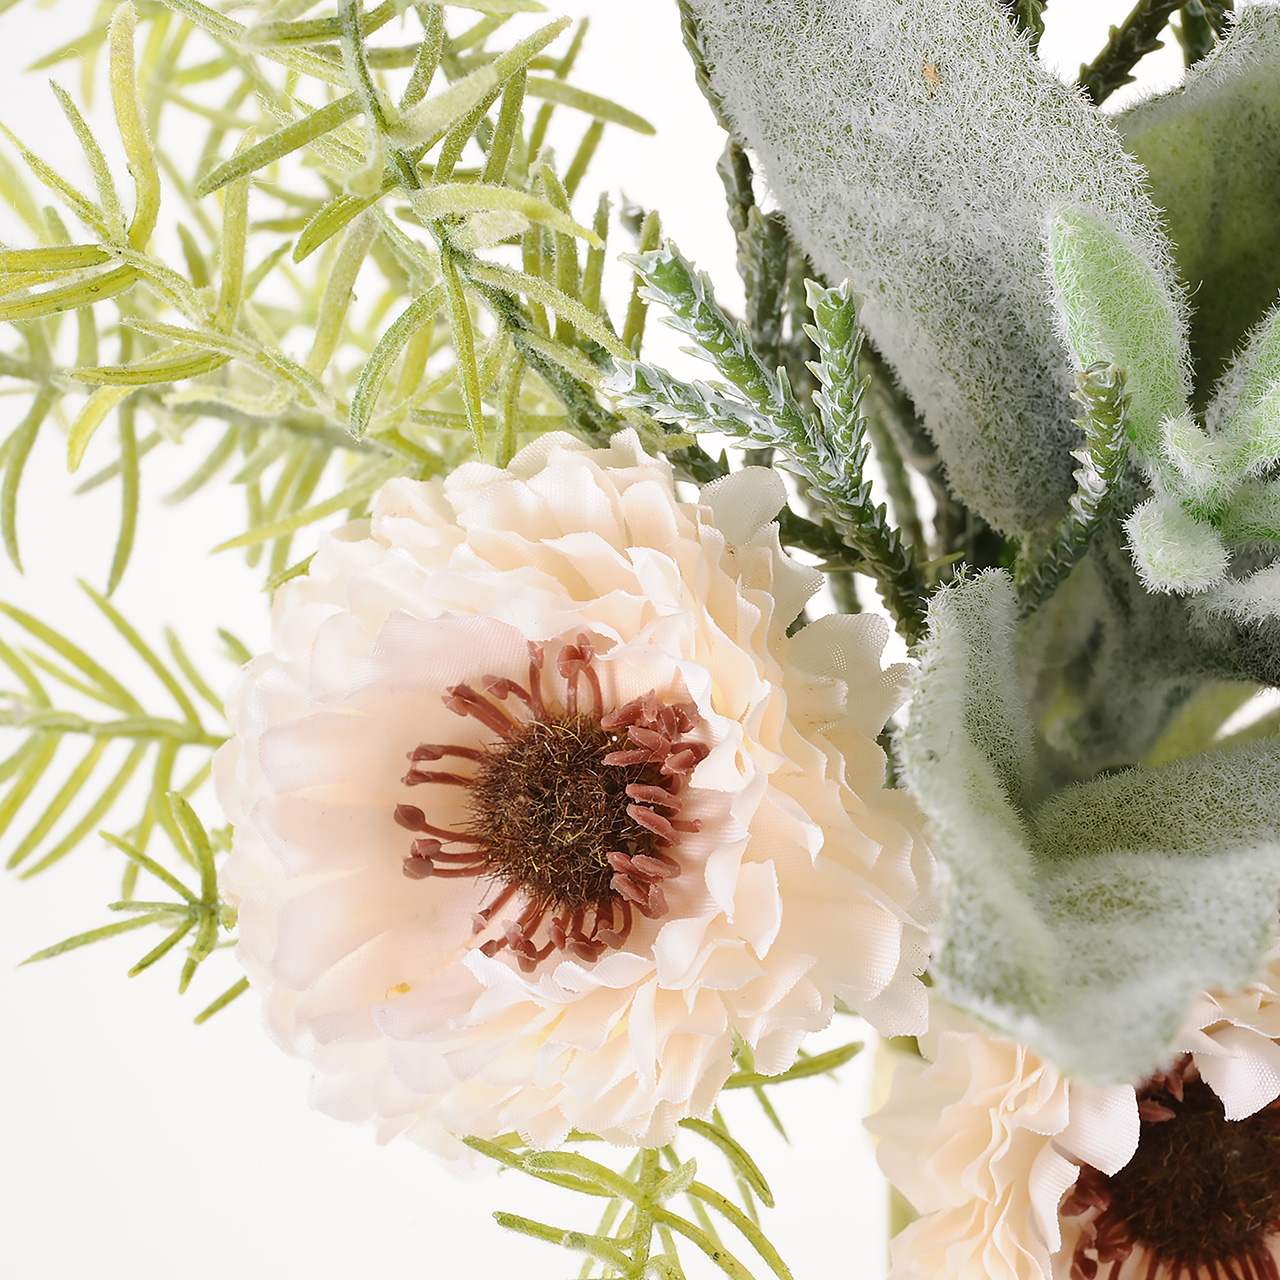 マイフラ 通販 Magiq ミネットヘリクリサムブーケ ホワイト アーティフィシャルフラワー 造花 Fx 長さ 約32 幅 約18cm ホワイト Magiq アーティフィシャルフラワー 造花 全国にmagiq 花器 花資材などをお届けします